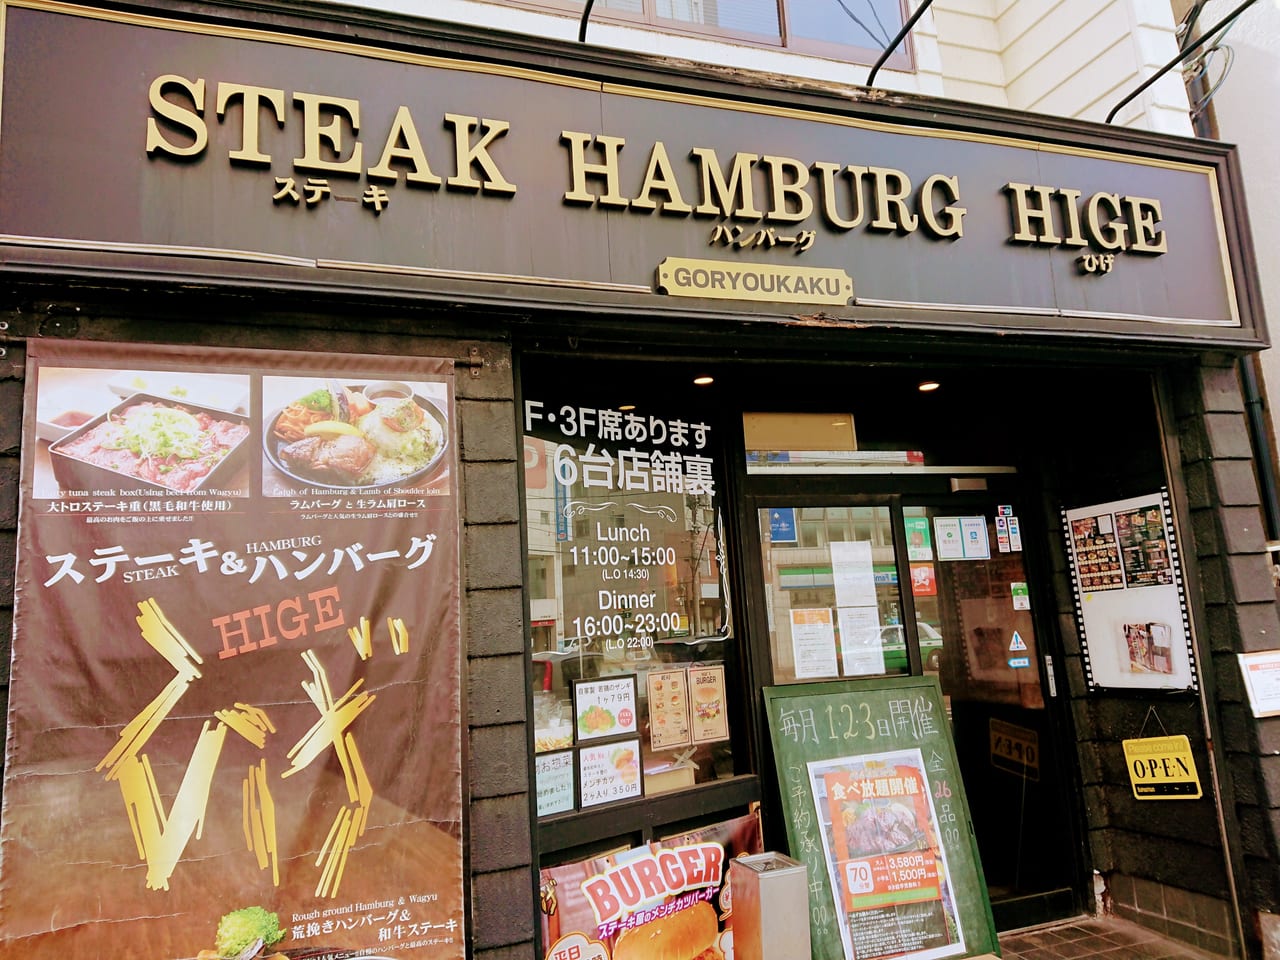 函館市 本町の Steak Hamburgひげ函館五稜郭店 ではボリュームたっぷりのメニューを家でも楽しむことができます 号外net 函館 市 渡島支庁